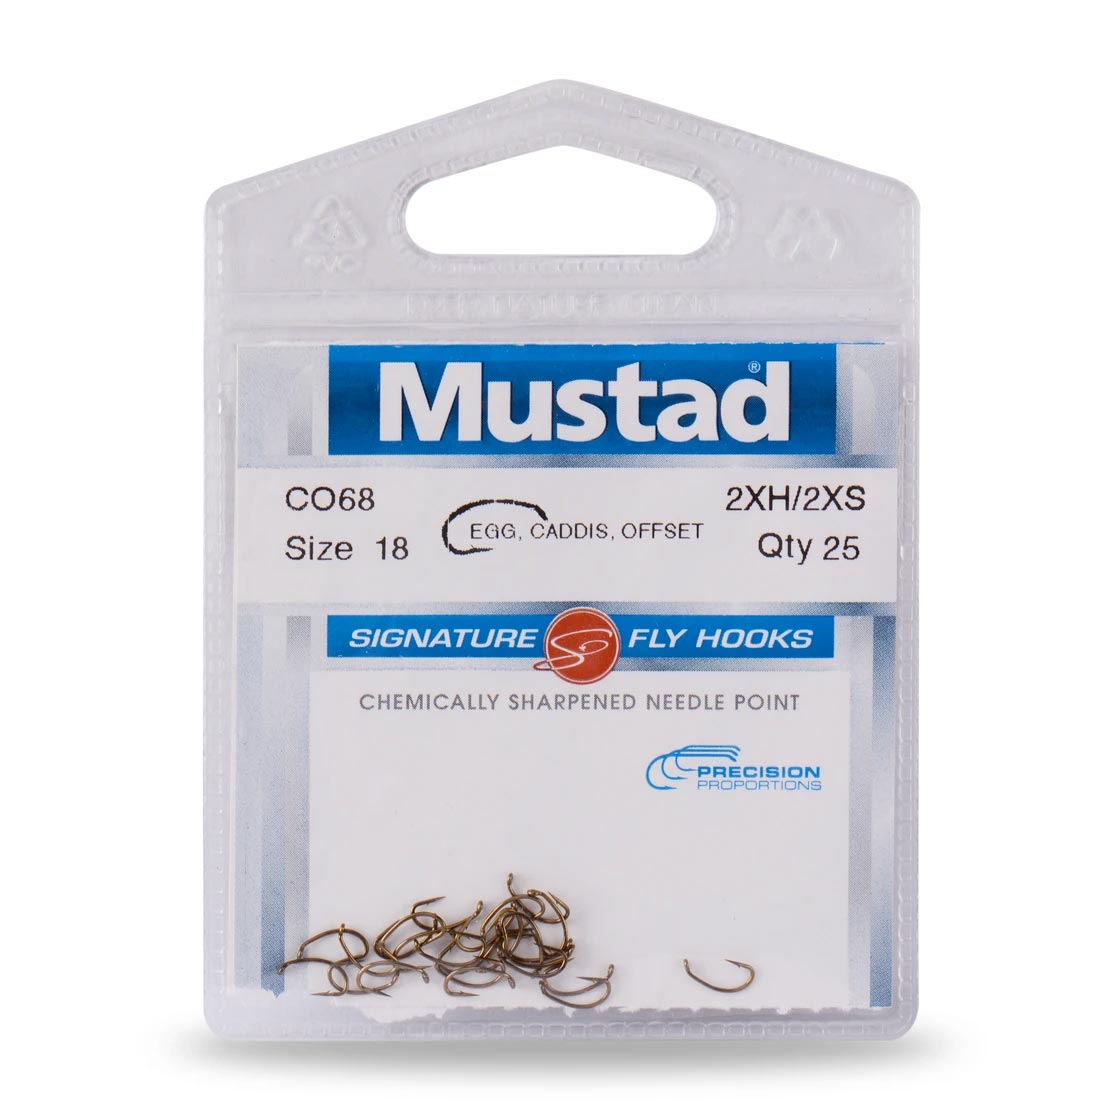 Mustad Signature Fly Hooks Egg Caddis Offset C068 2XH-2XS 12